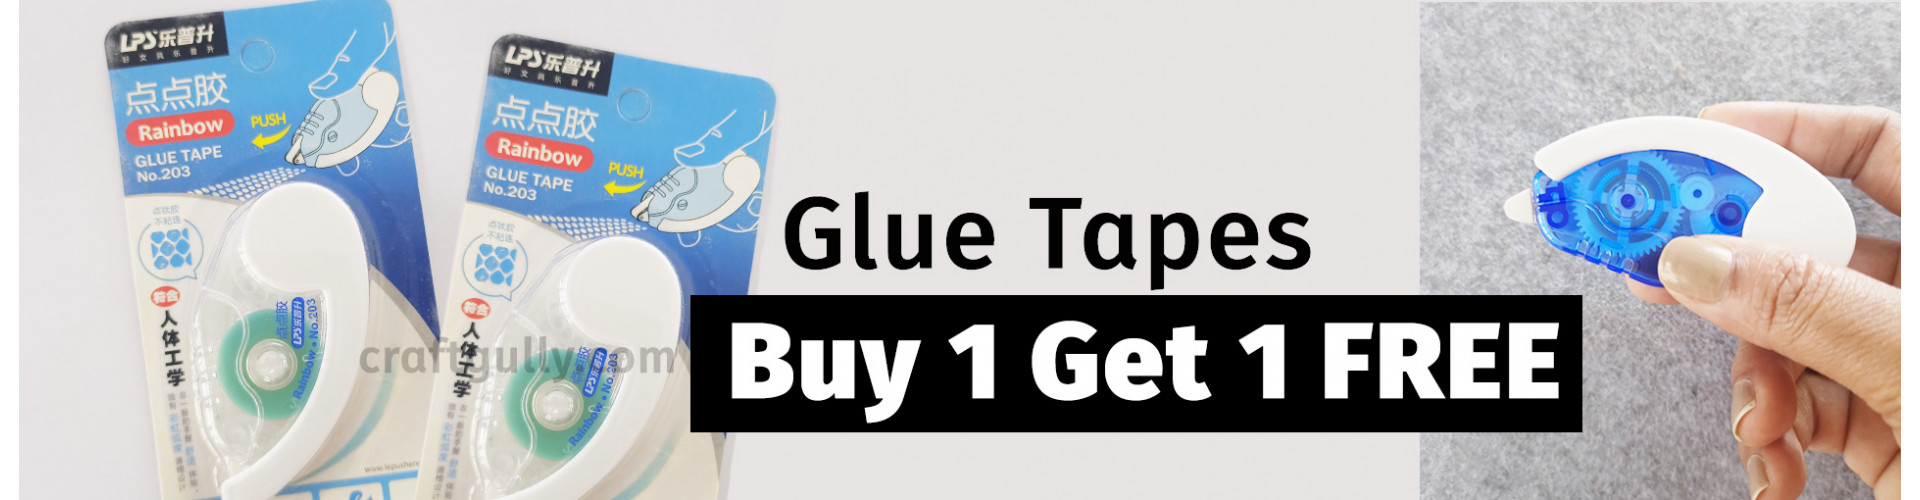 Glue Tape